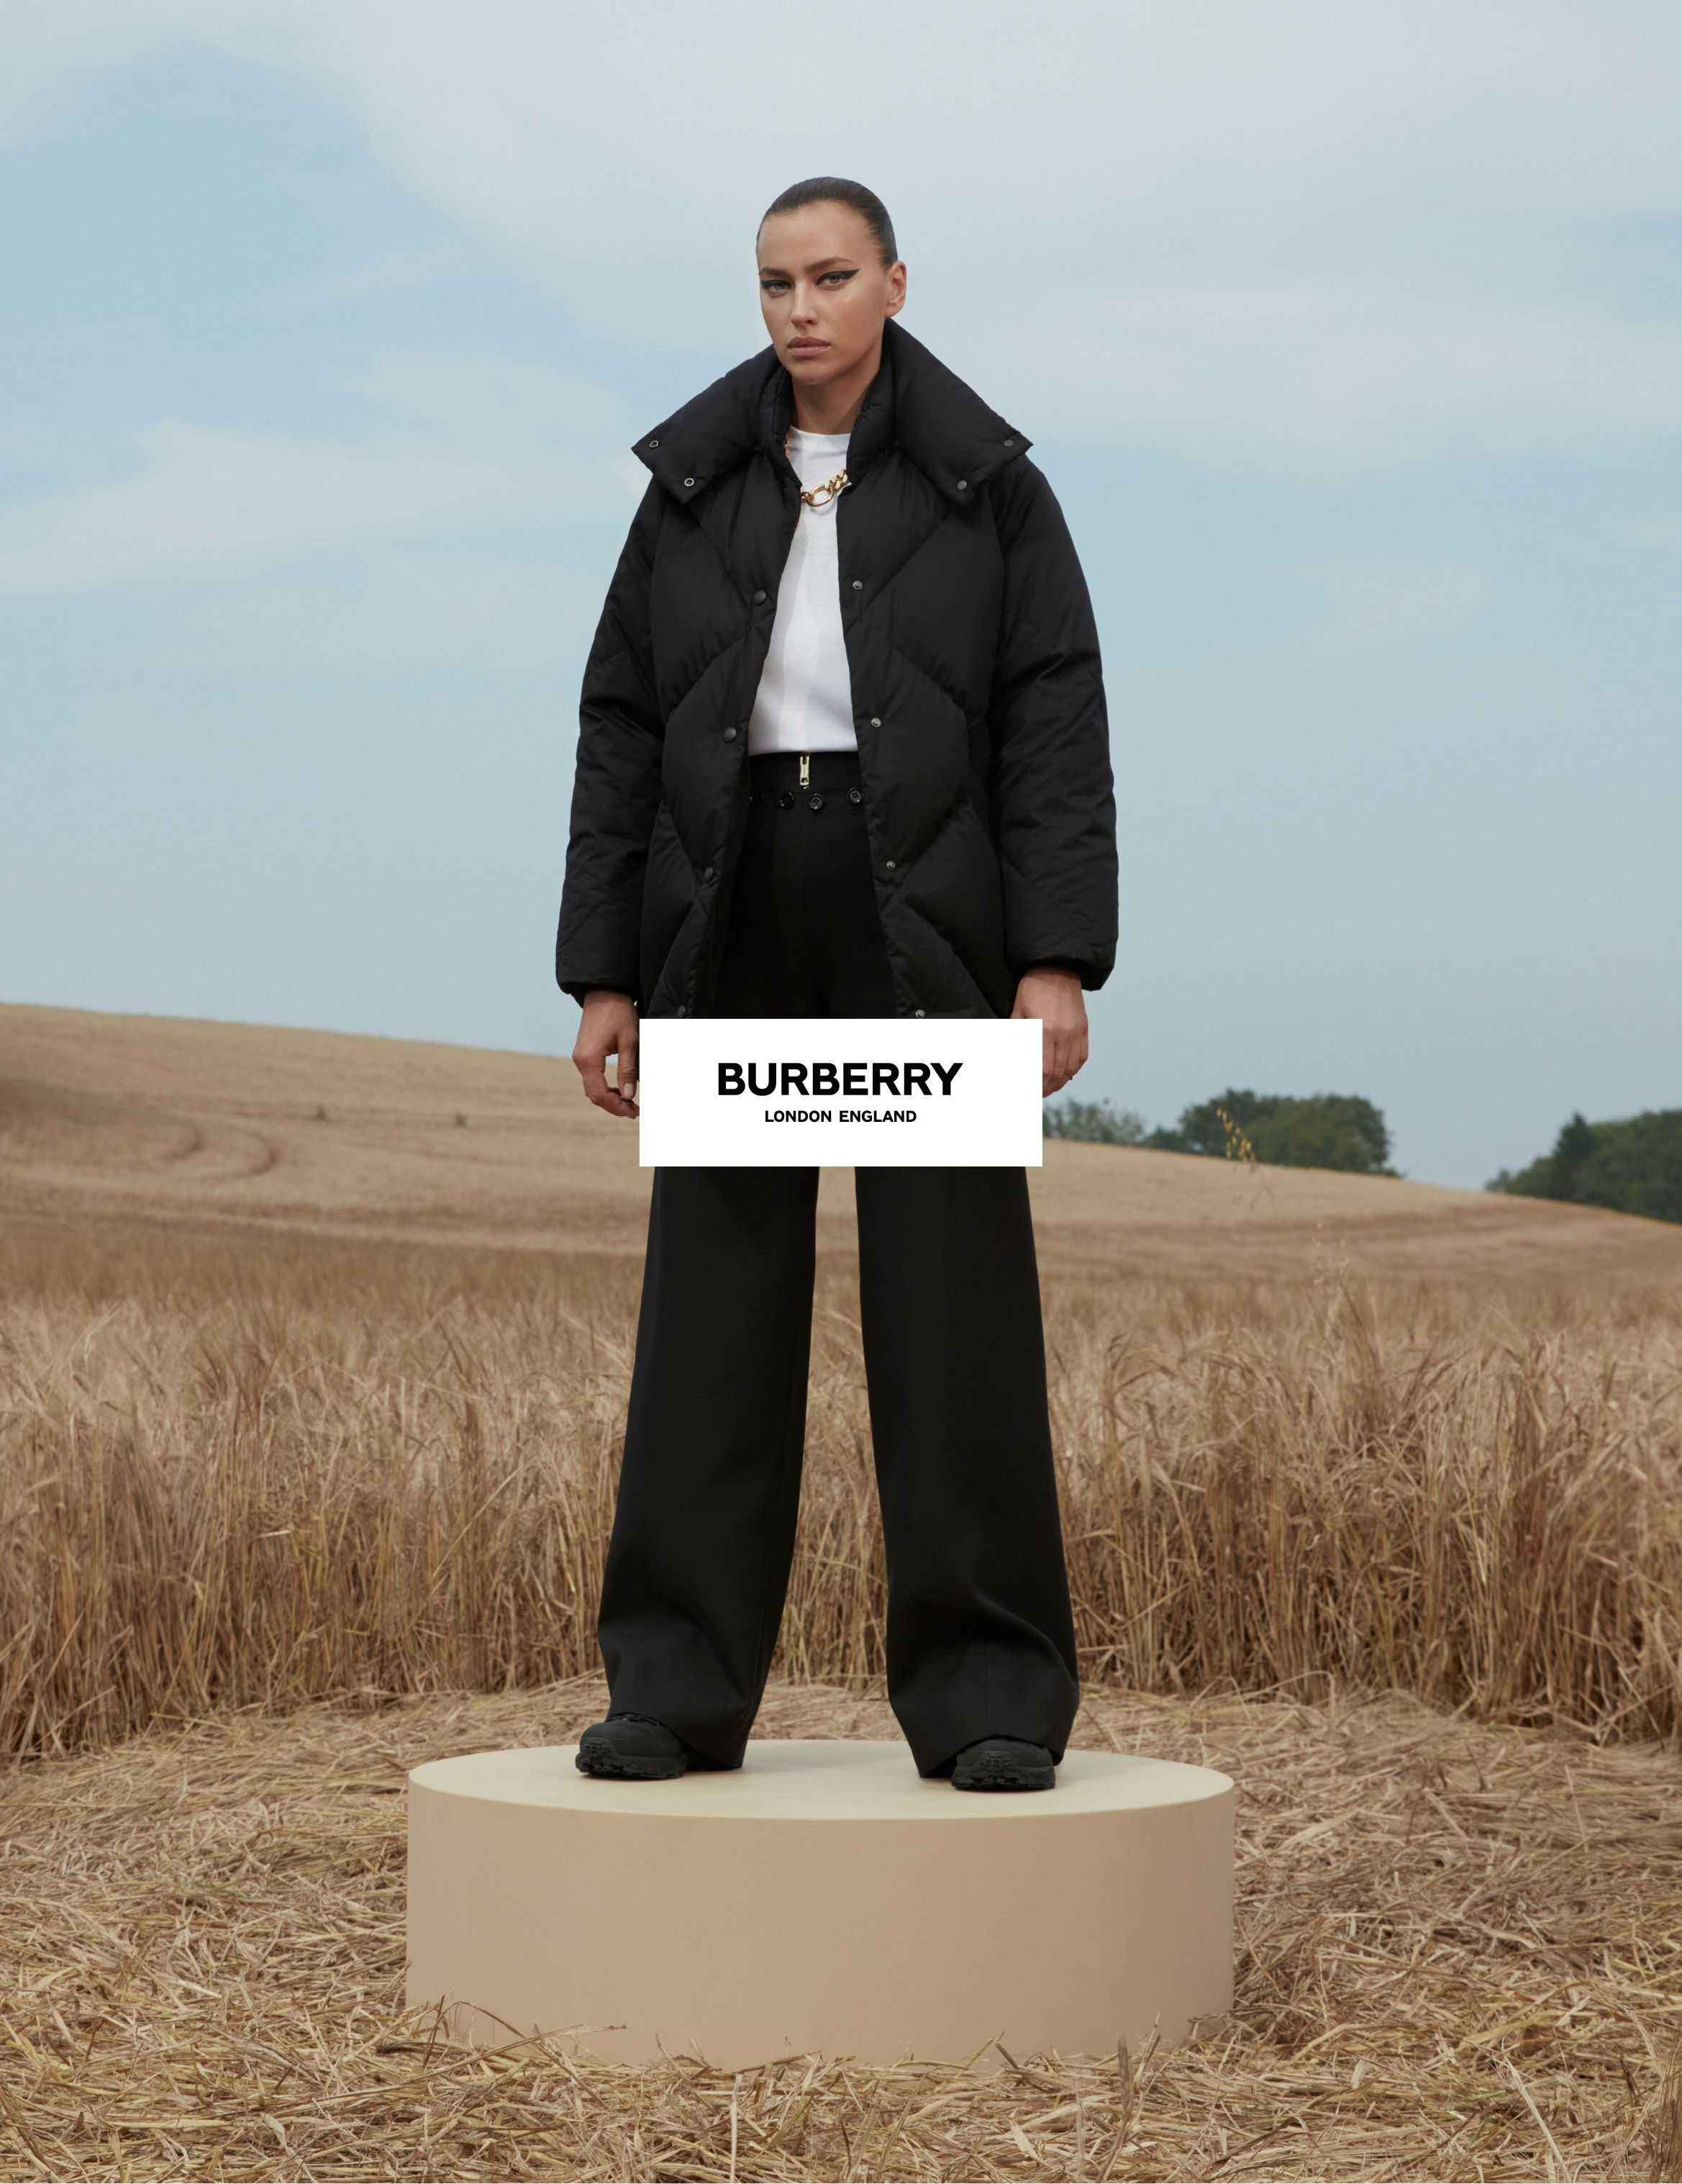 Burberry Outerwear - Danko Steiner - 3895